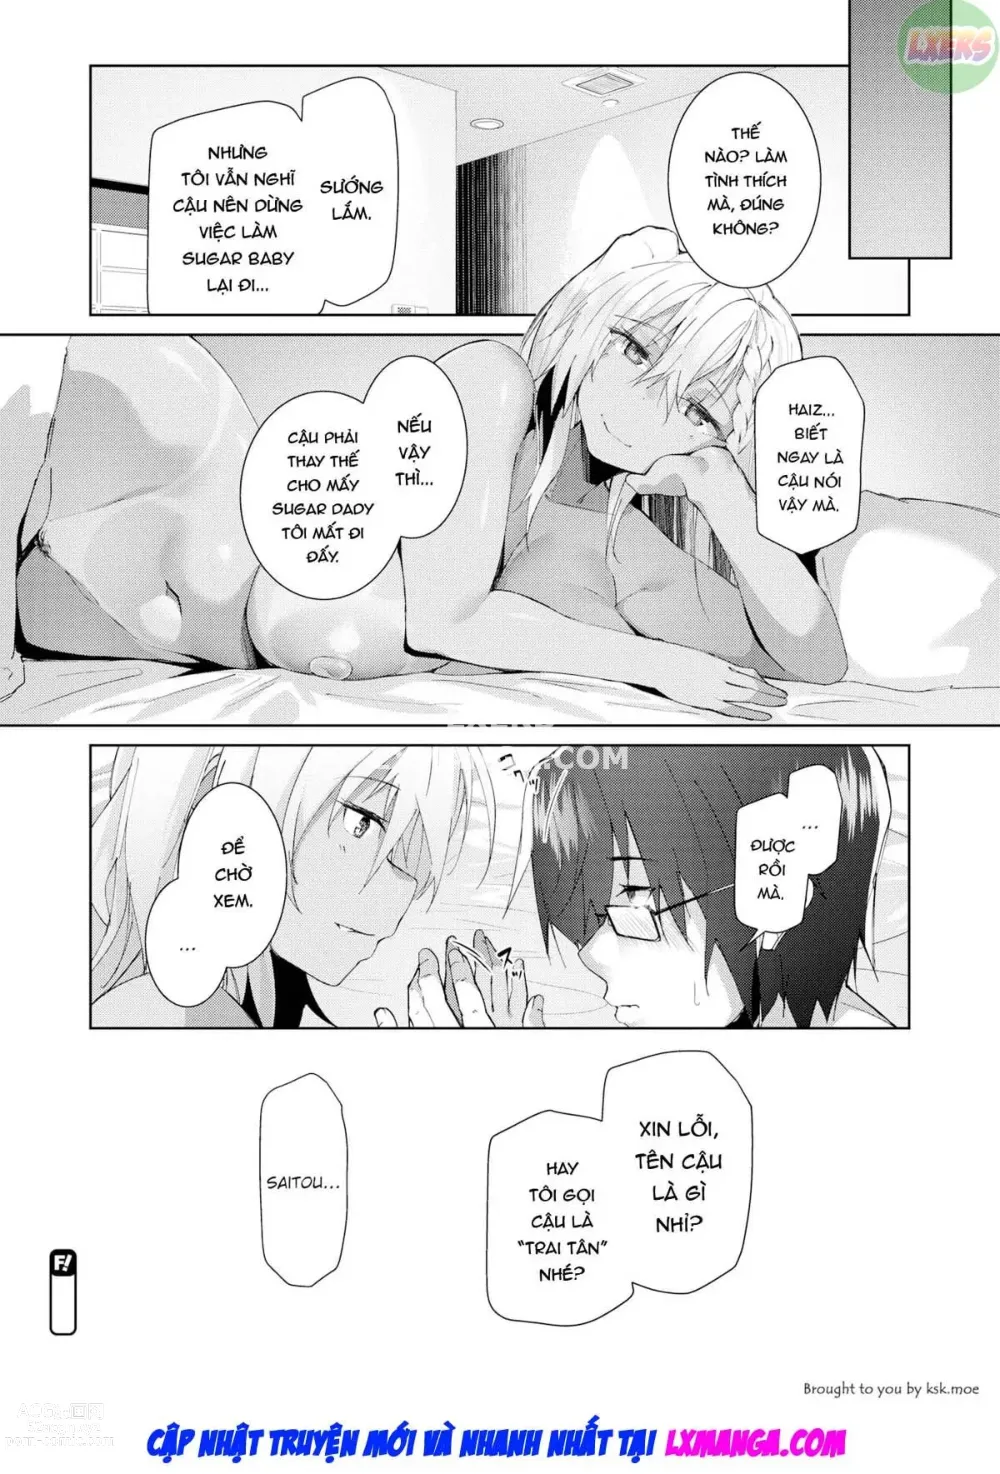 Page 23 of doujinshi Chỉ có thể bị cuốn hút